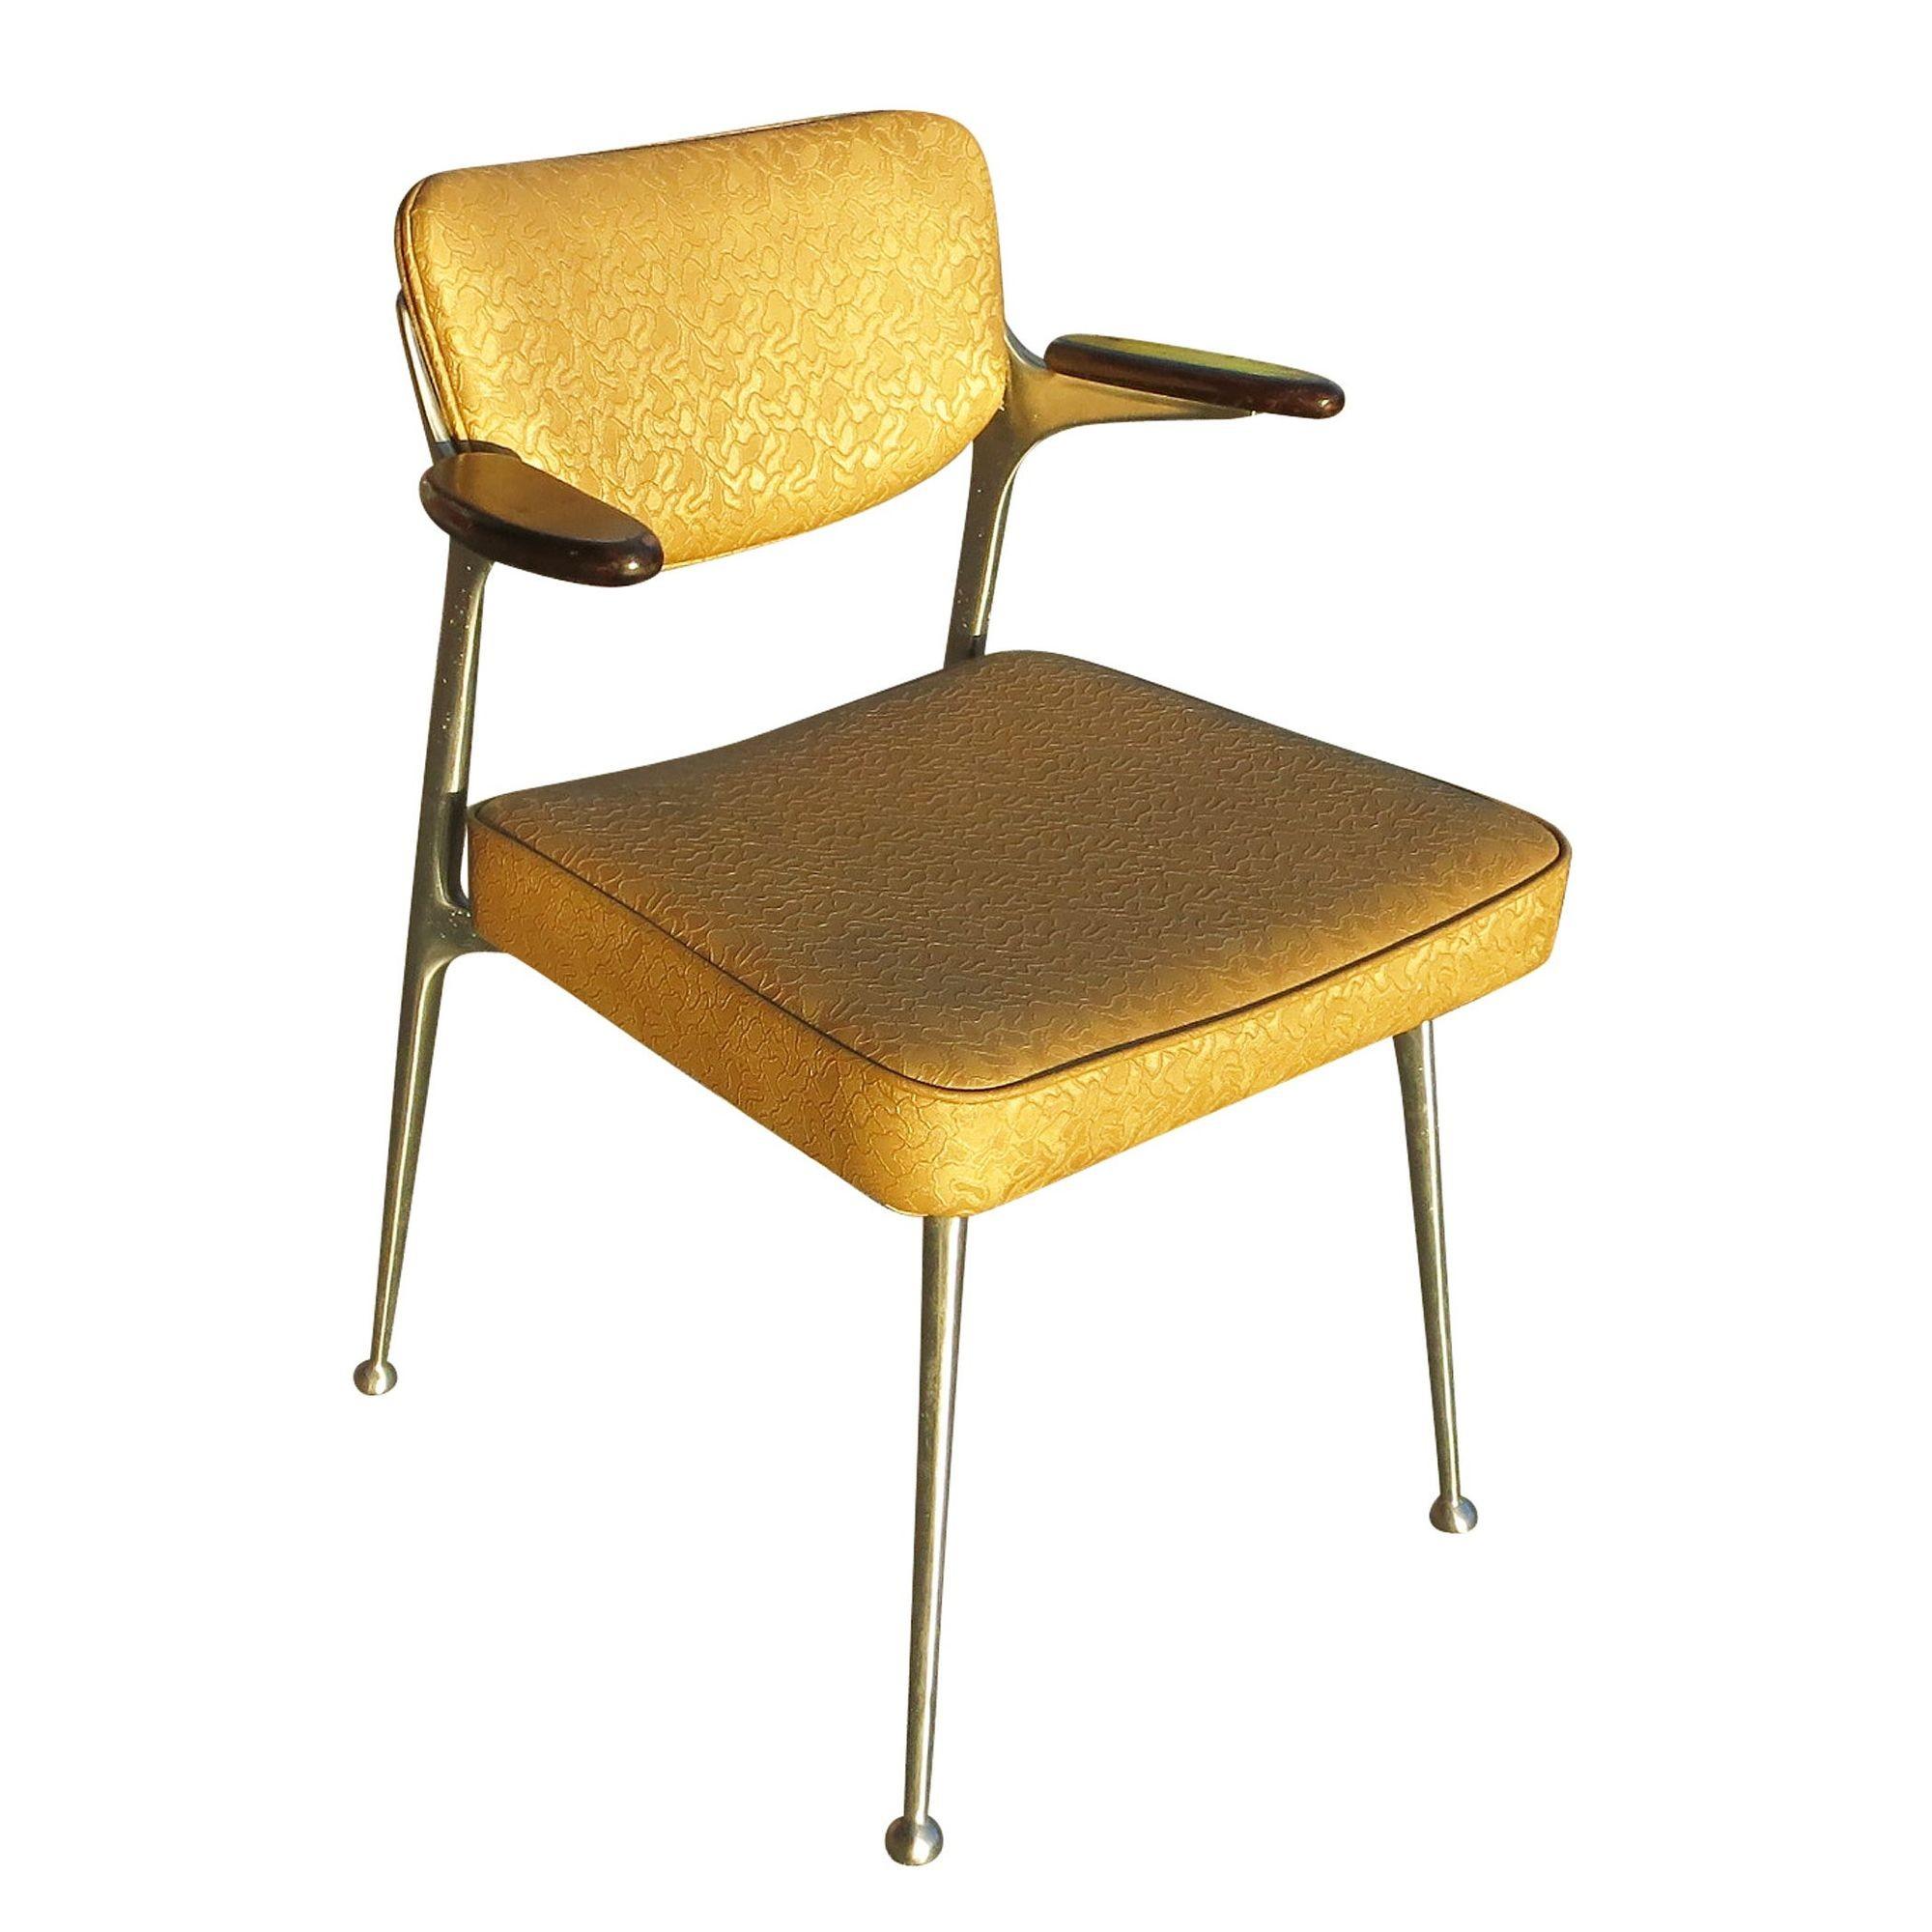 Ein Satz von vier Gazelle-Stühlen aus Aluminium von Shelby Williams aus der Zeit um 1950 mit originalen Sitzbezügen.

Diese Stühle sind meisterhaft aus Aluminiumgussrahmen gefertigt, die sich zu einer ikonischen und anmutigen Form verjüngen, mit